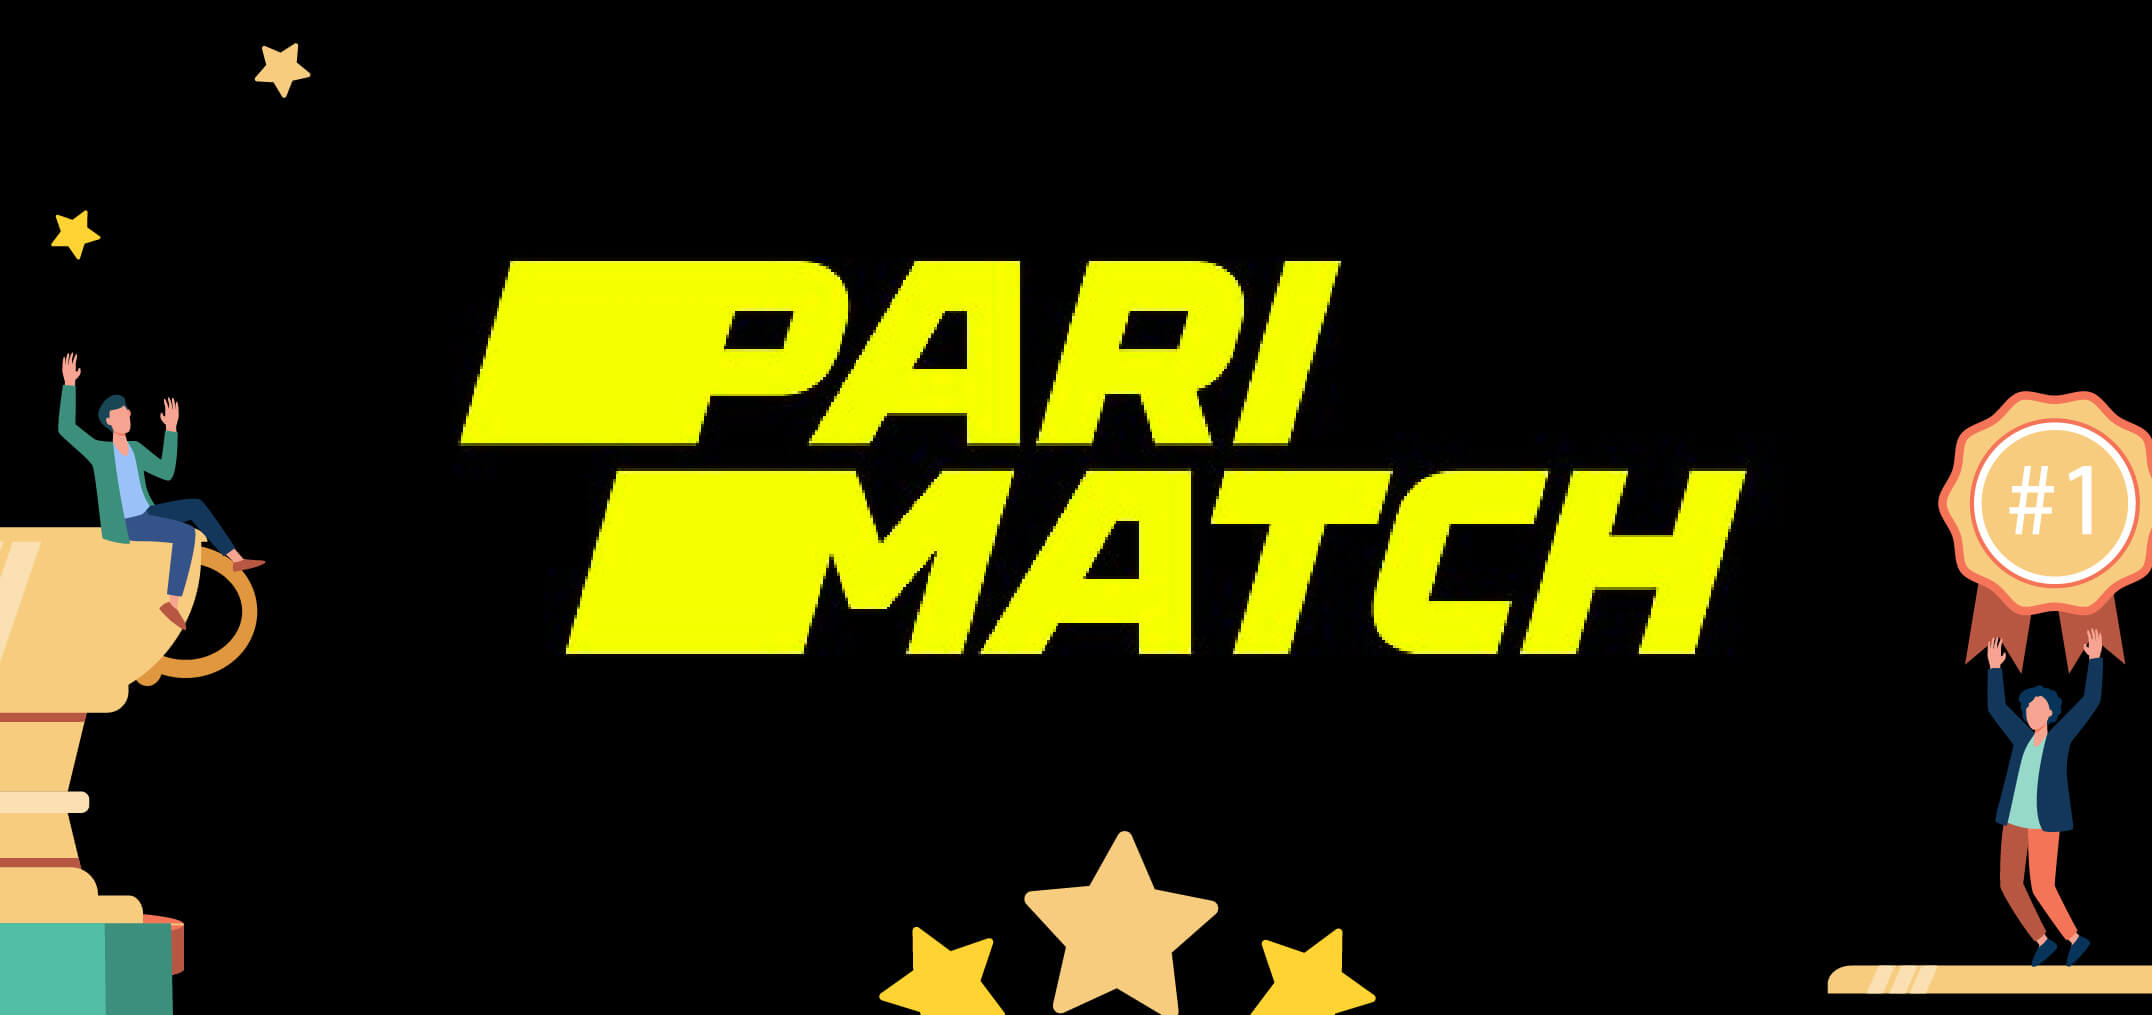 Parimatch review